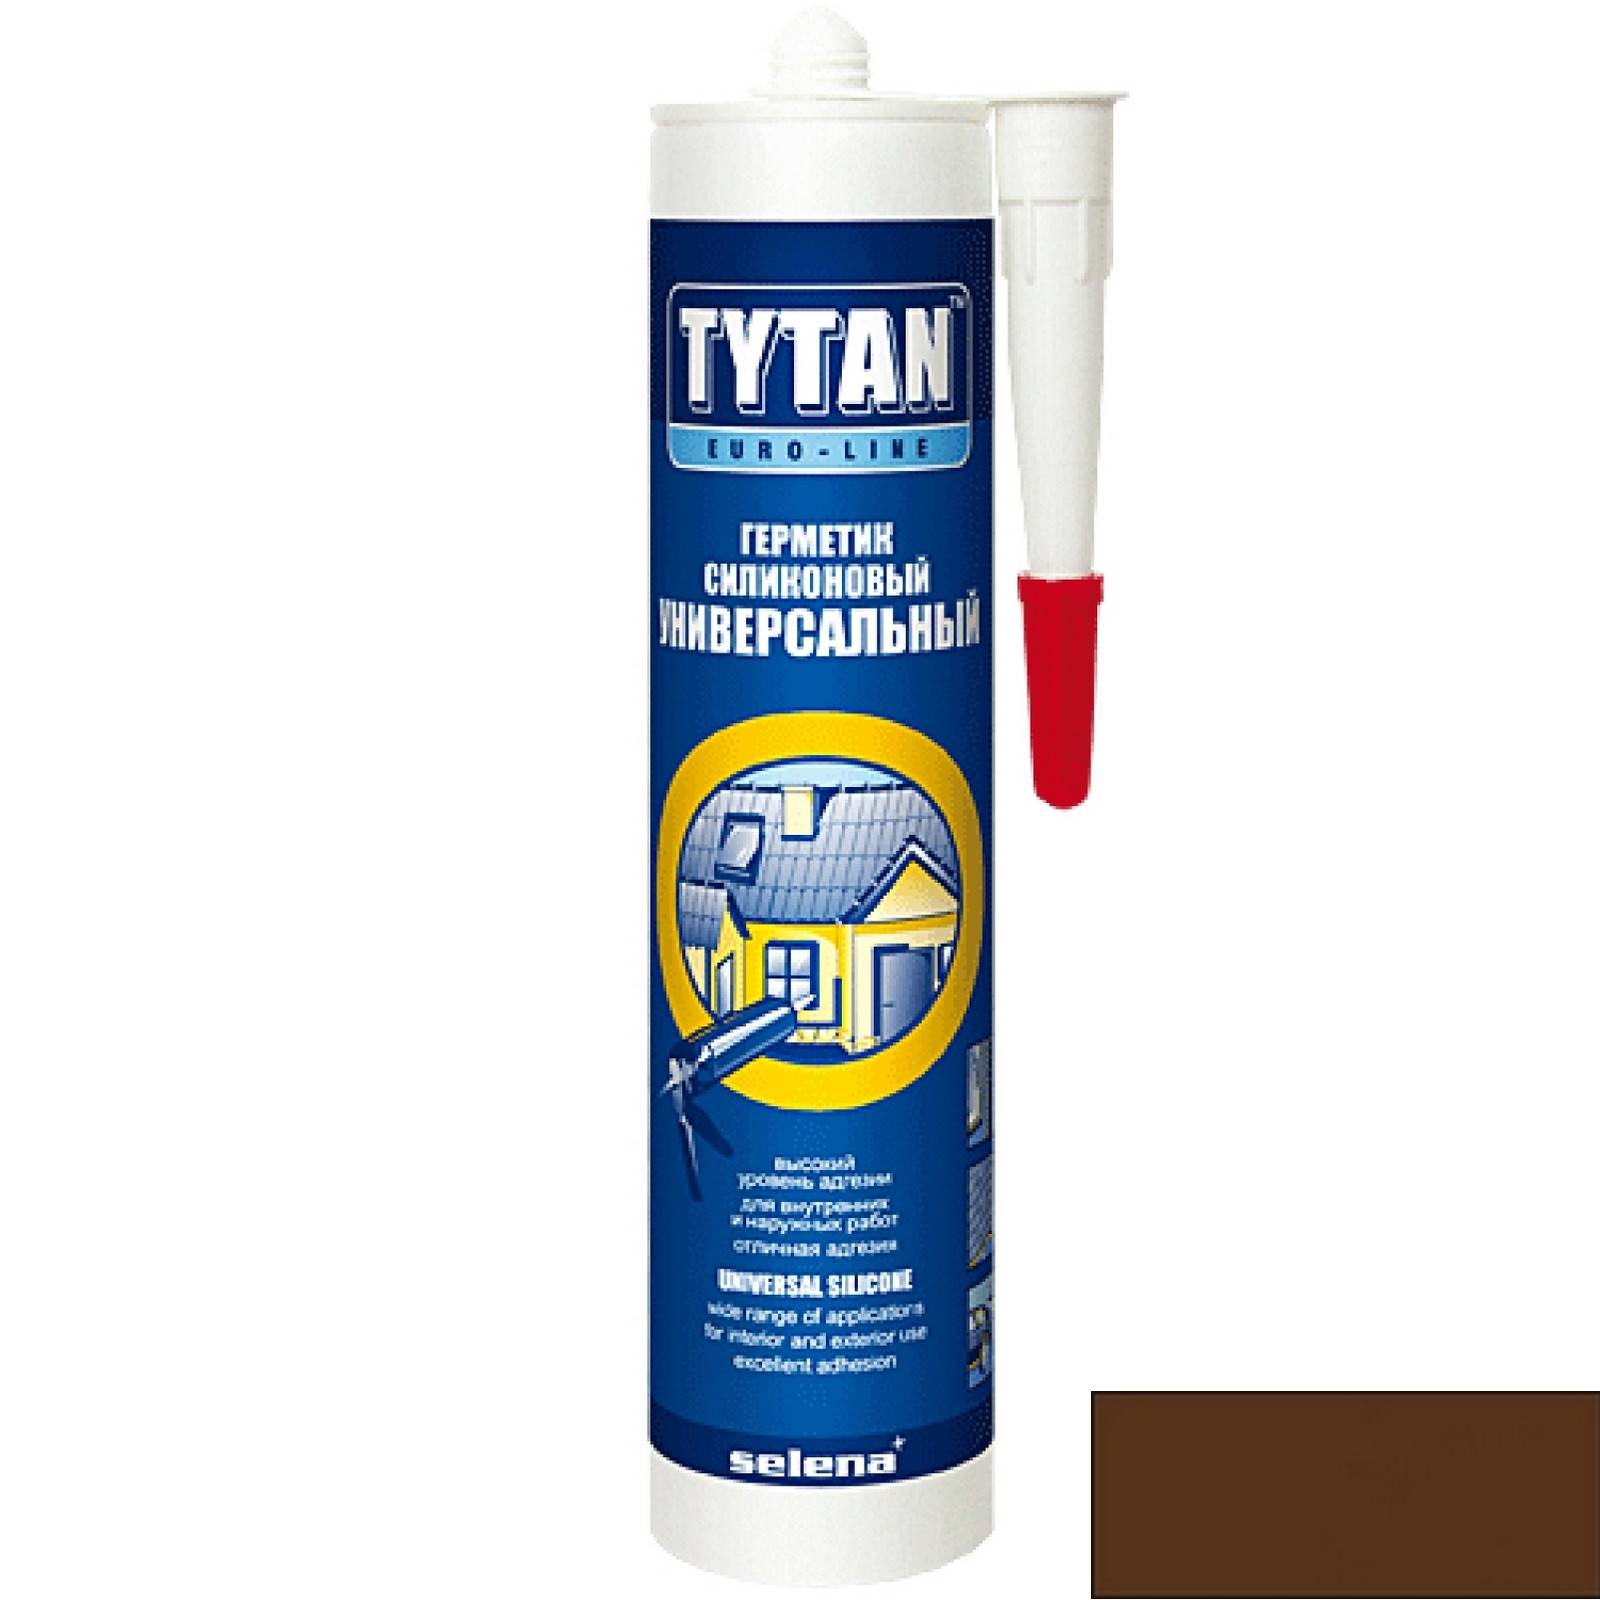 Герметик tytan professional: универсальный и высокотемпературный состав, силиконовый герметик объемом 310 мл